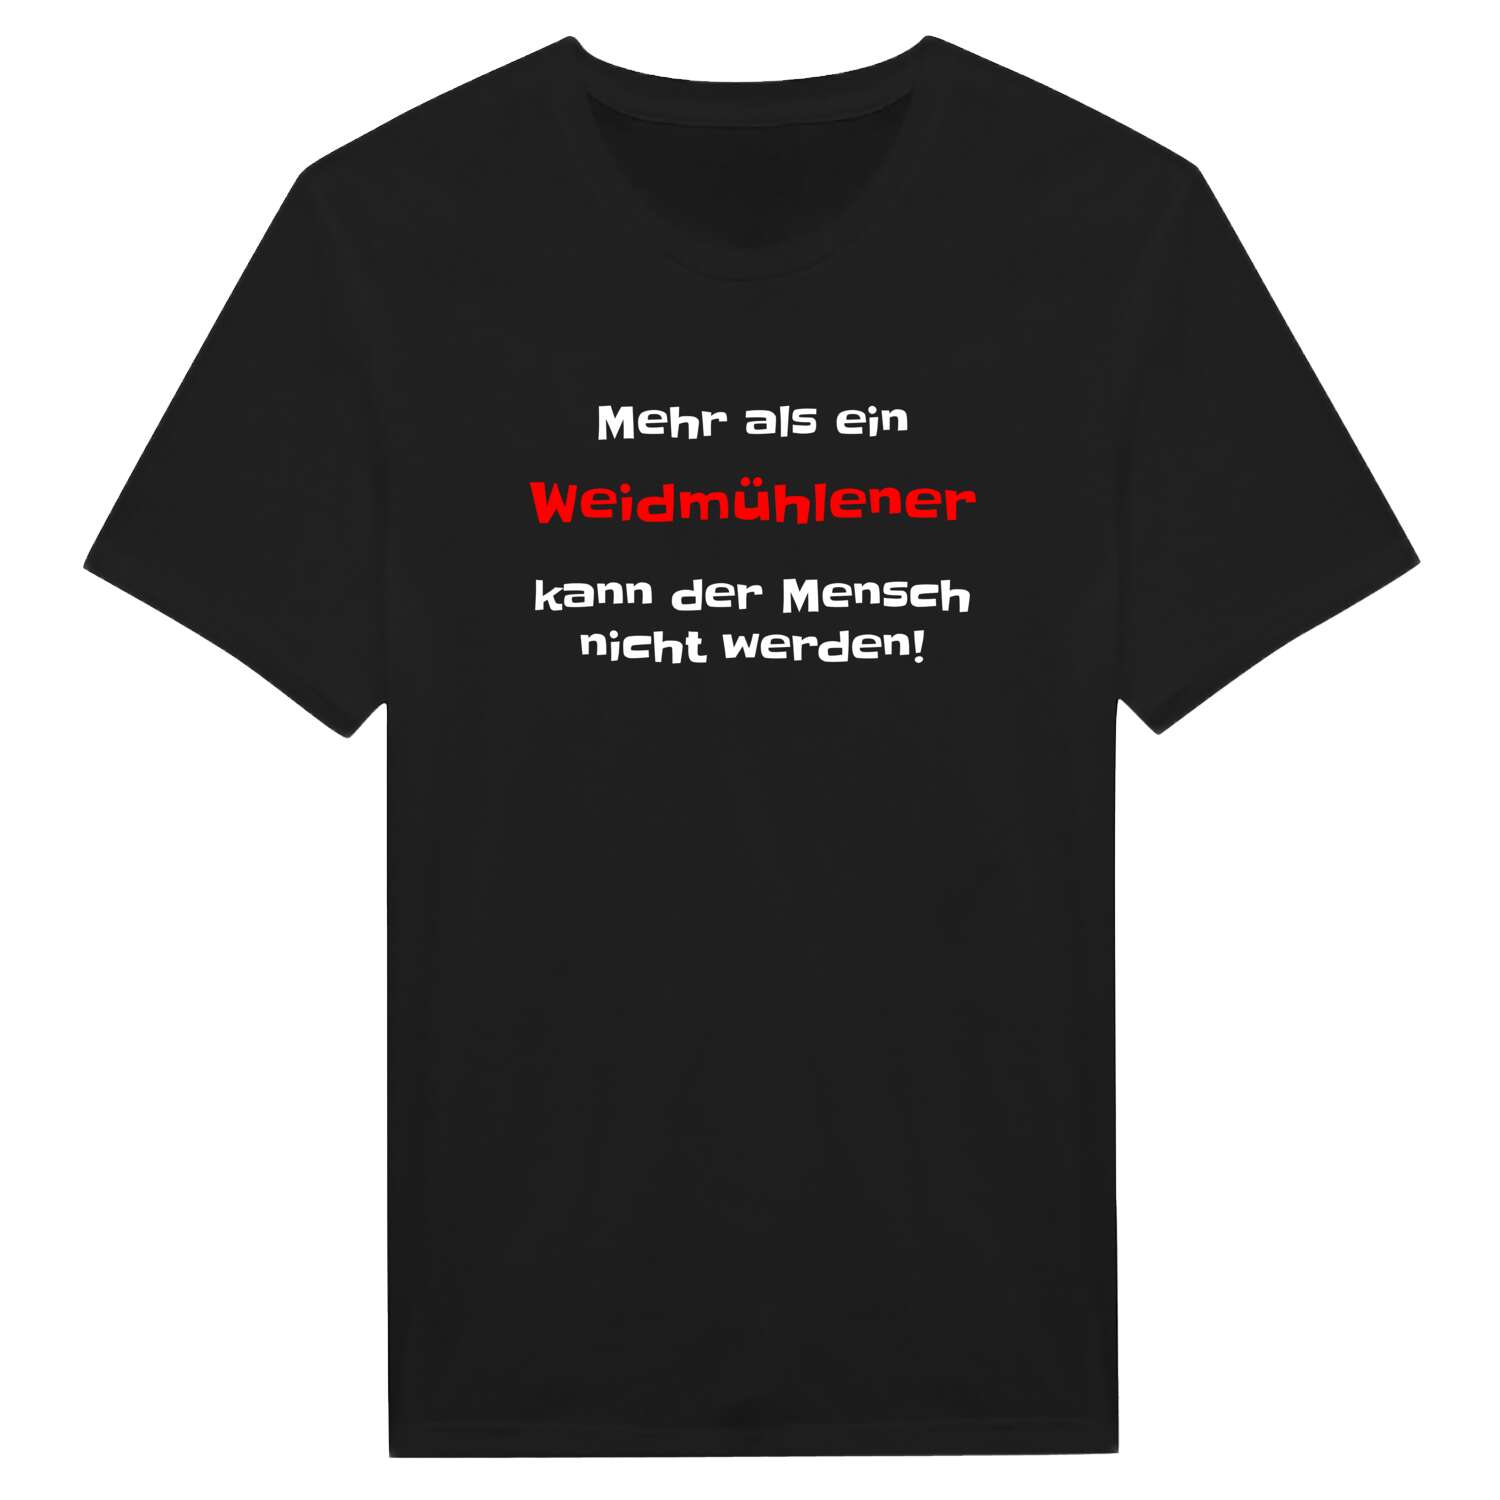 Weidmühle T-Shirt »Mehr als ein«